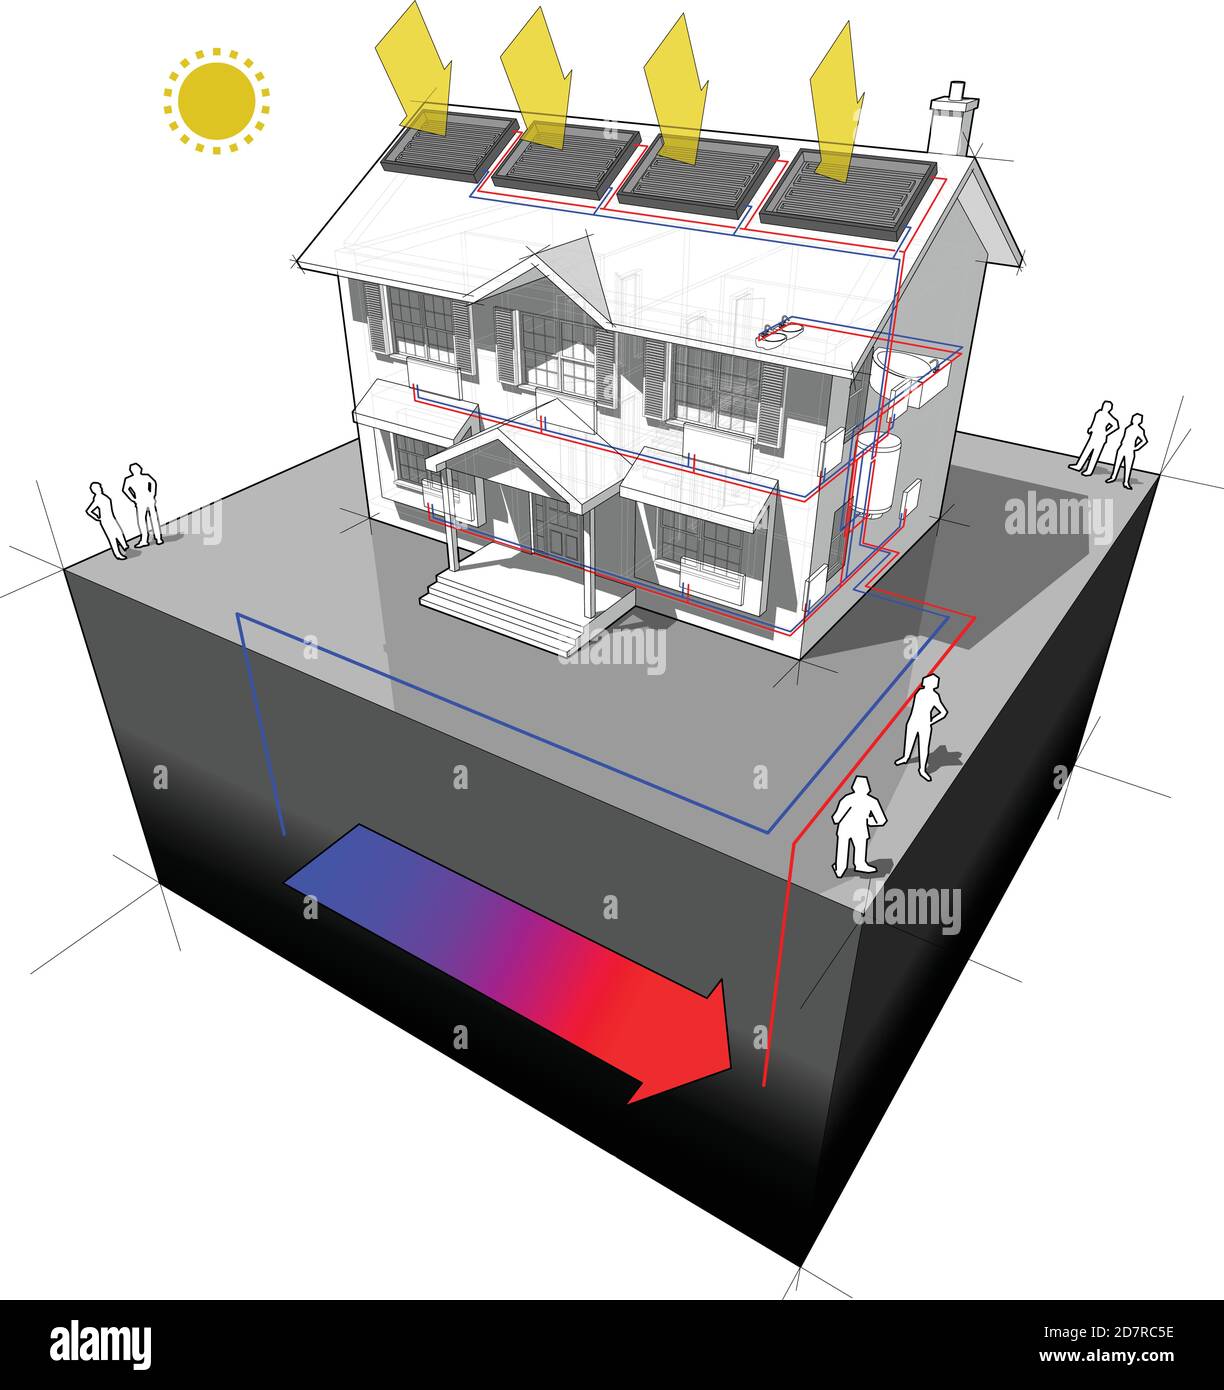 Schéma d'une maison coloniale classique avec le sol comme source de chaleur et des panneaux solaires sur le toit comme source d'énergie de chauffage et des radiateurs Illustration de Vecteur